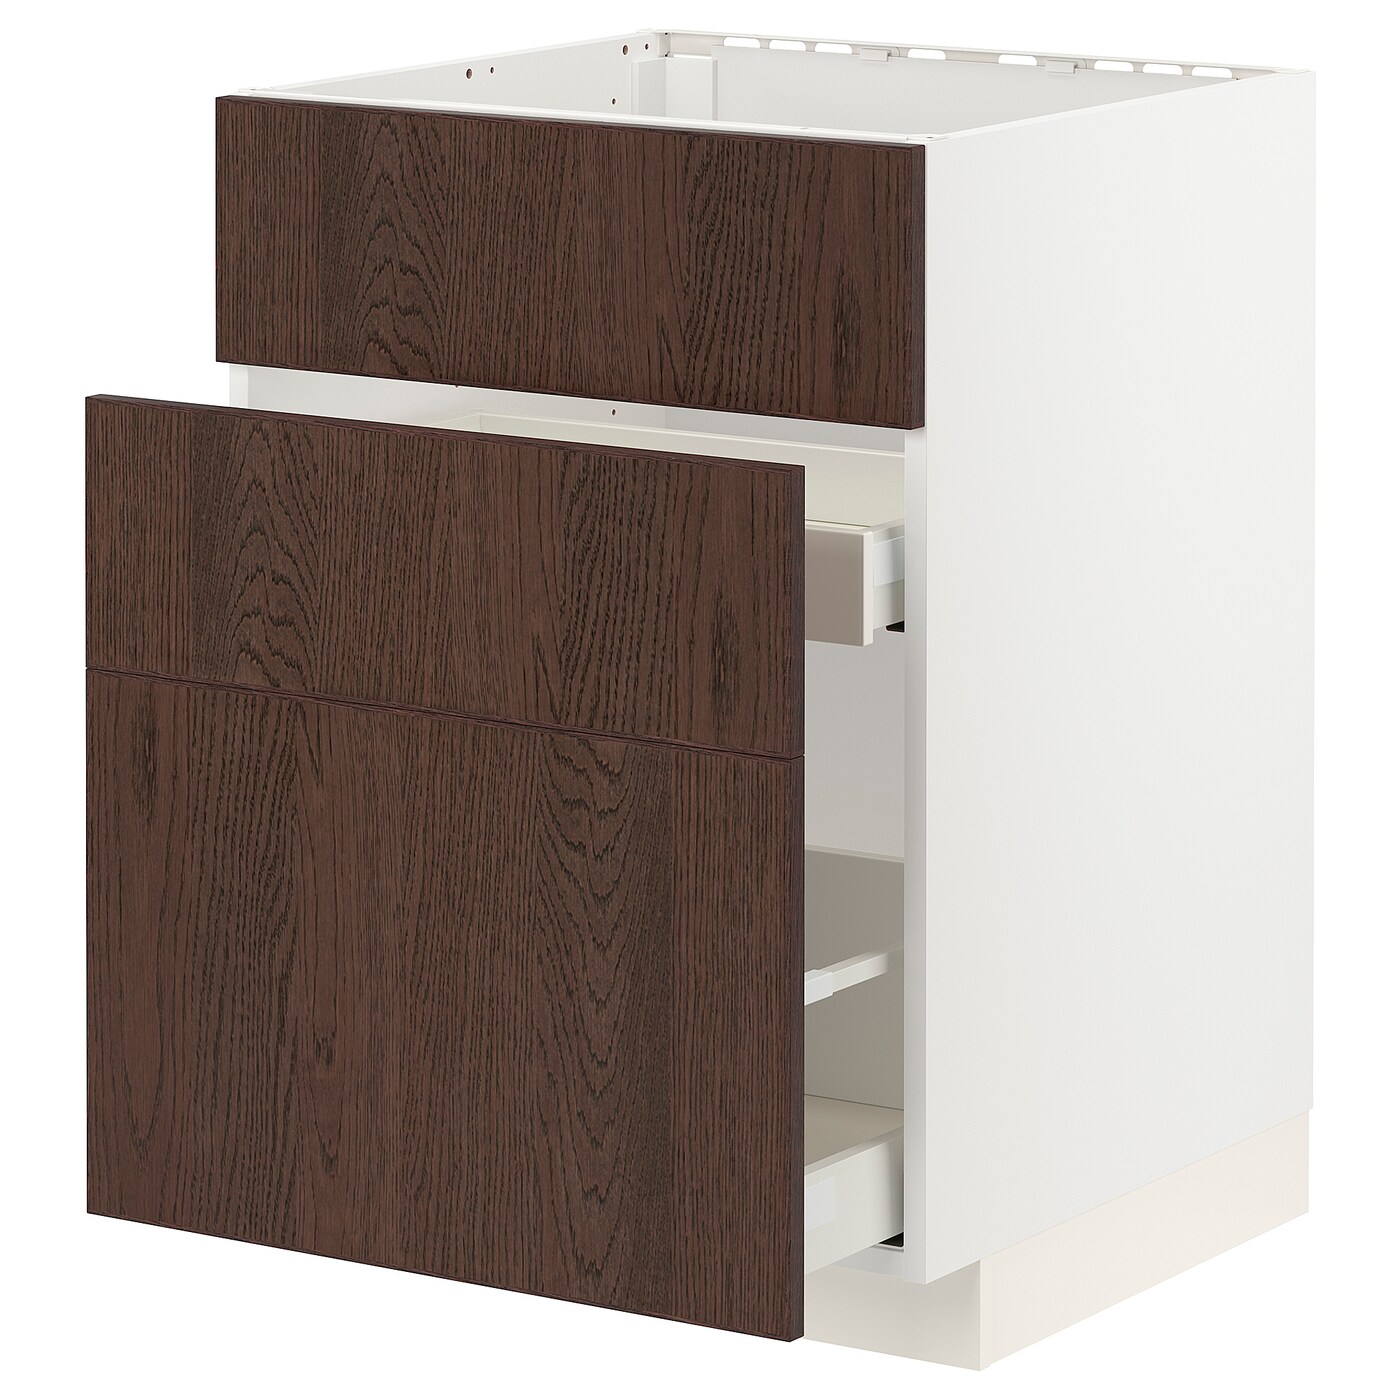 Напольный кухонный шкаф  - IKEA METOD MAXIMERA, 88x62x60см, белый/коричневый, МЕТОД МАКСИМЕРА ИКЕА